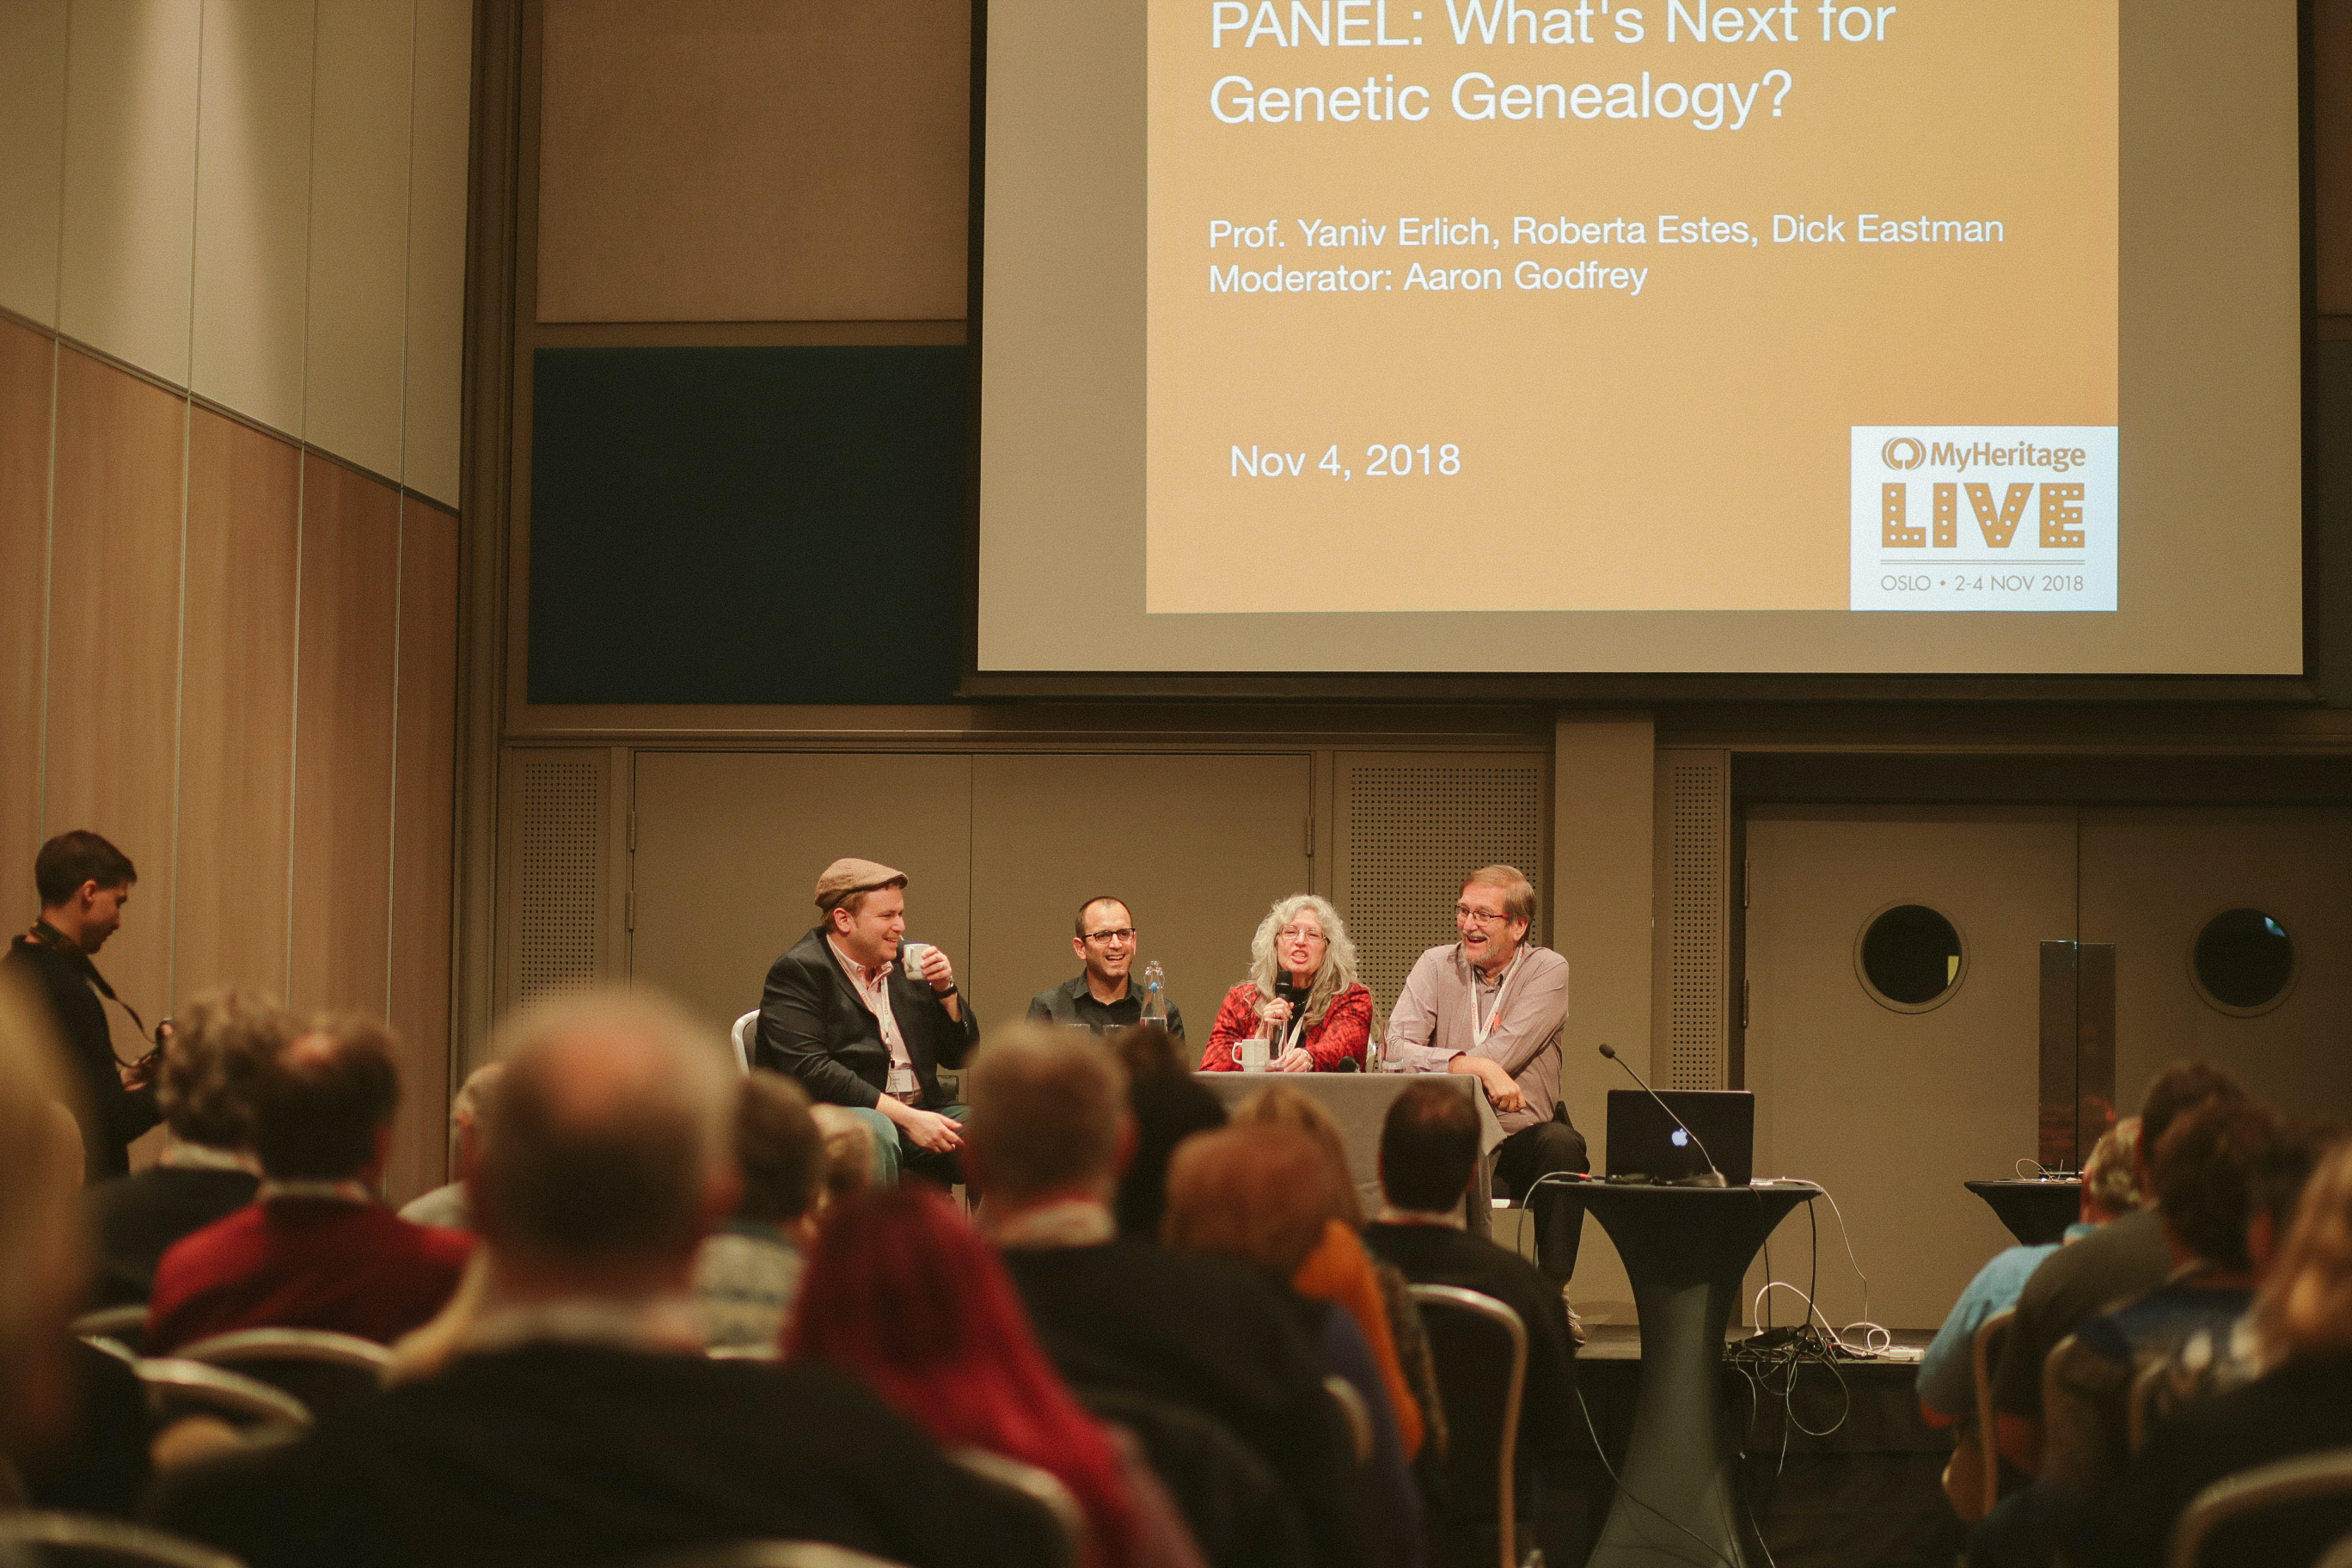 Podiumsdiskussion zum Thema Was ist die genetische Genealogie? mit Aaron Godfrey, Dr. Yaniv Erlich, Roberta Estes und Dick Eastman